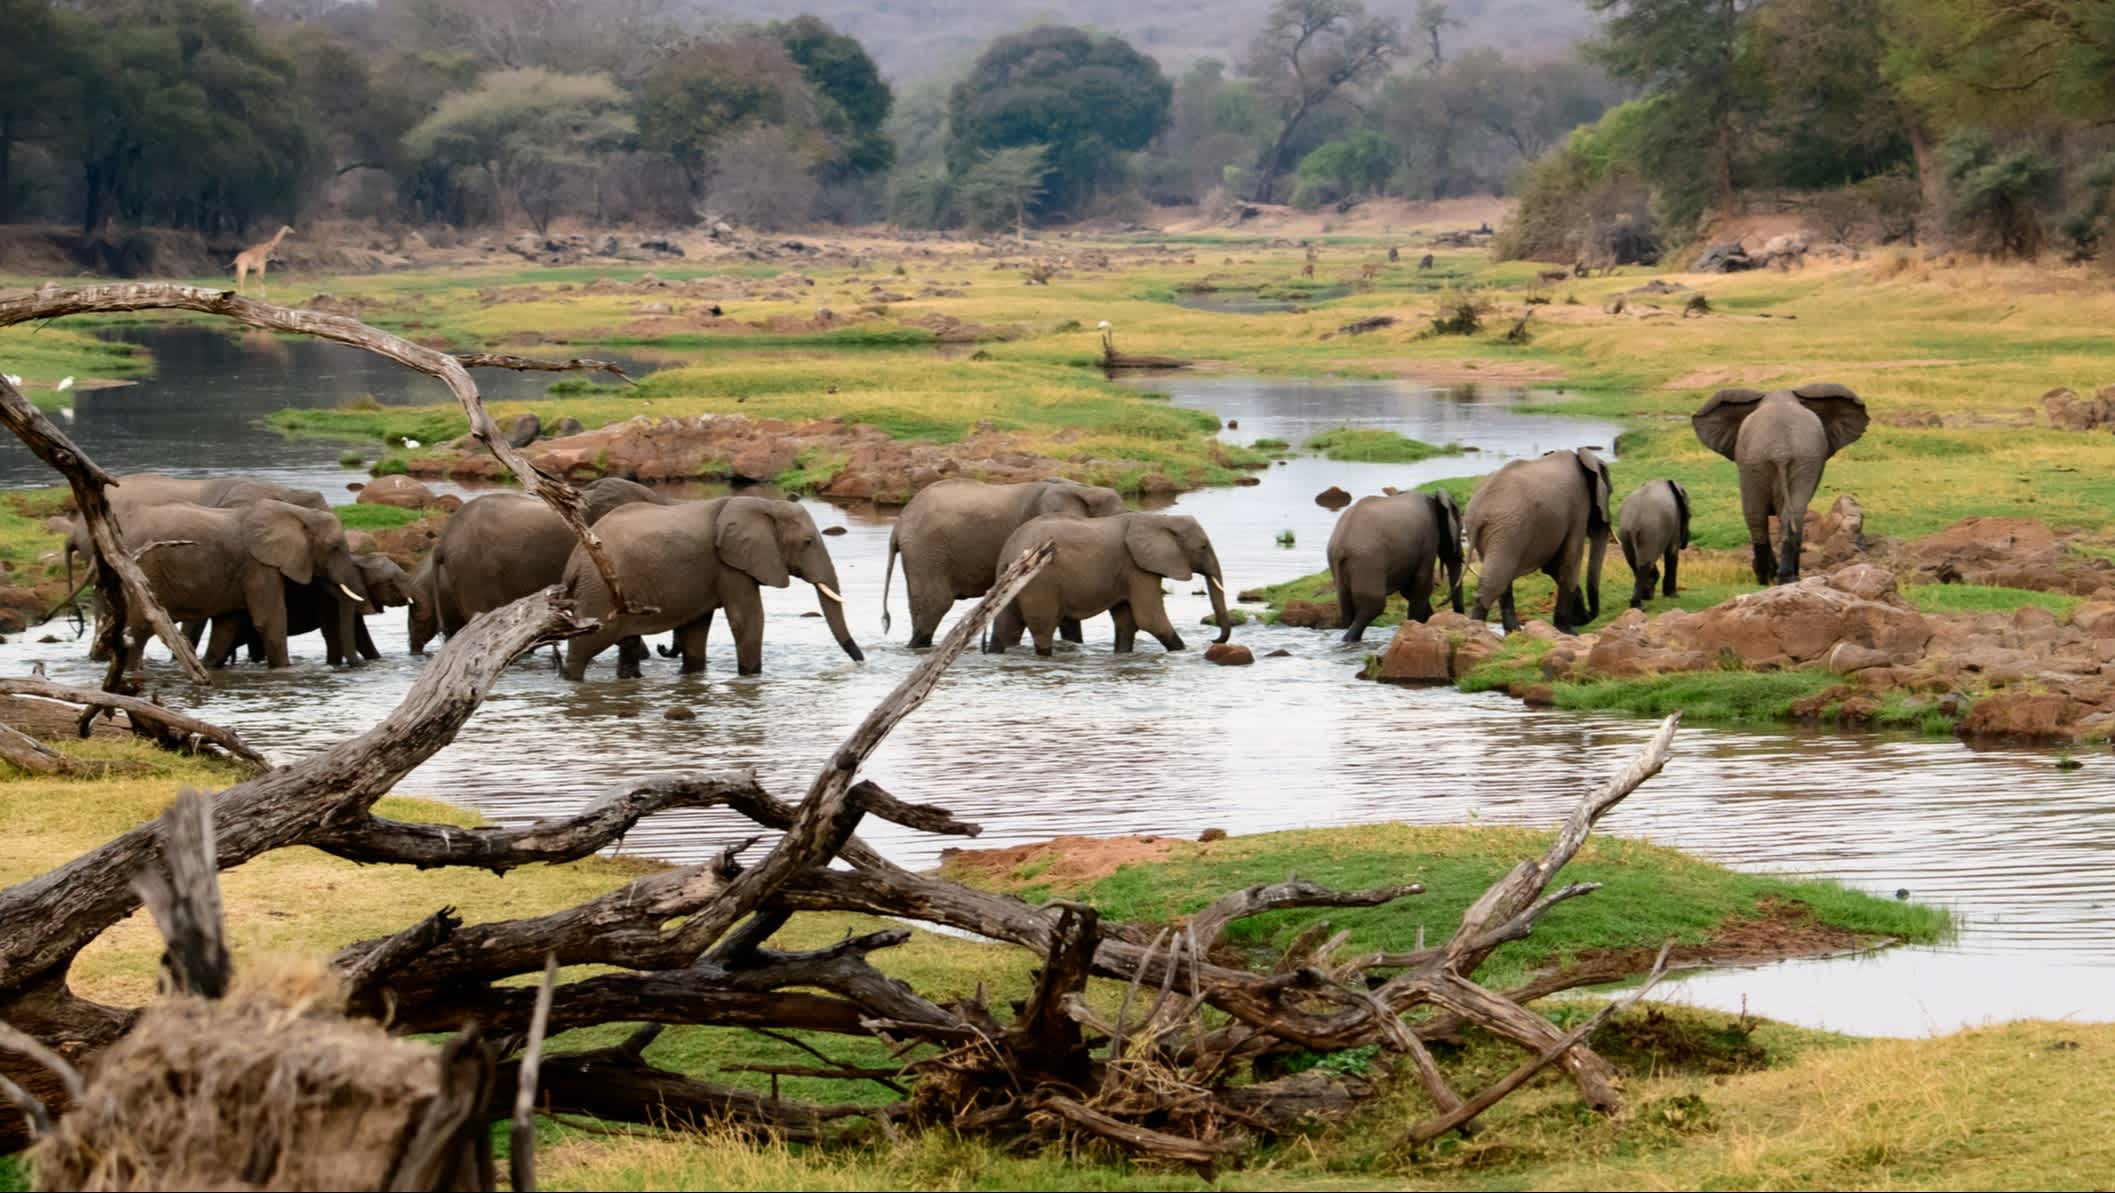 Afrikanische Elefanten am Jongomero-Fluss